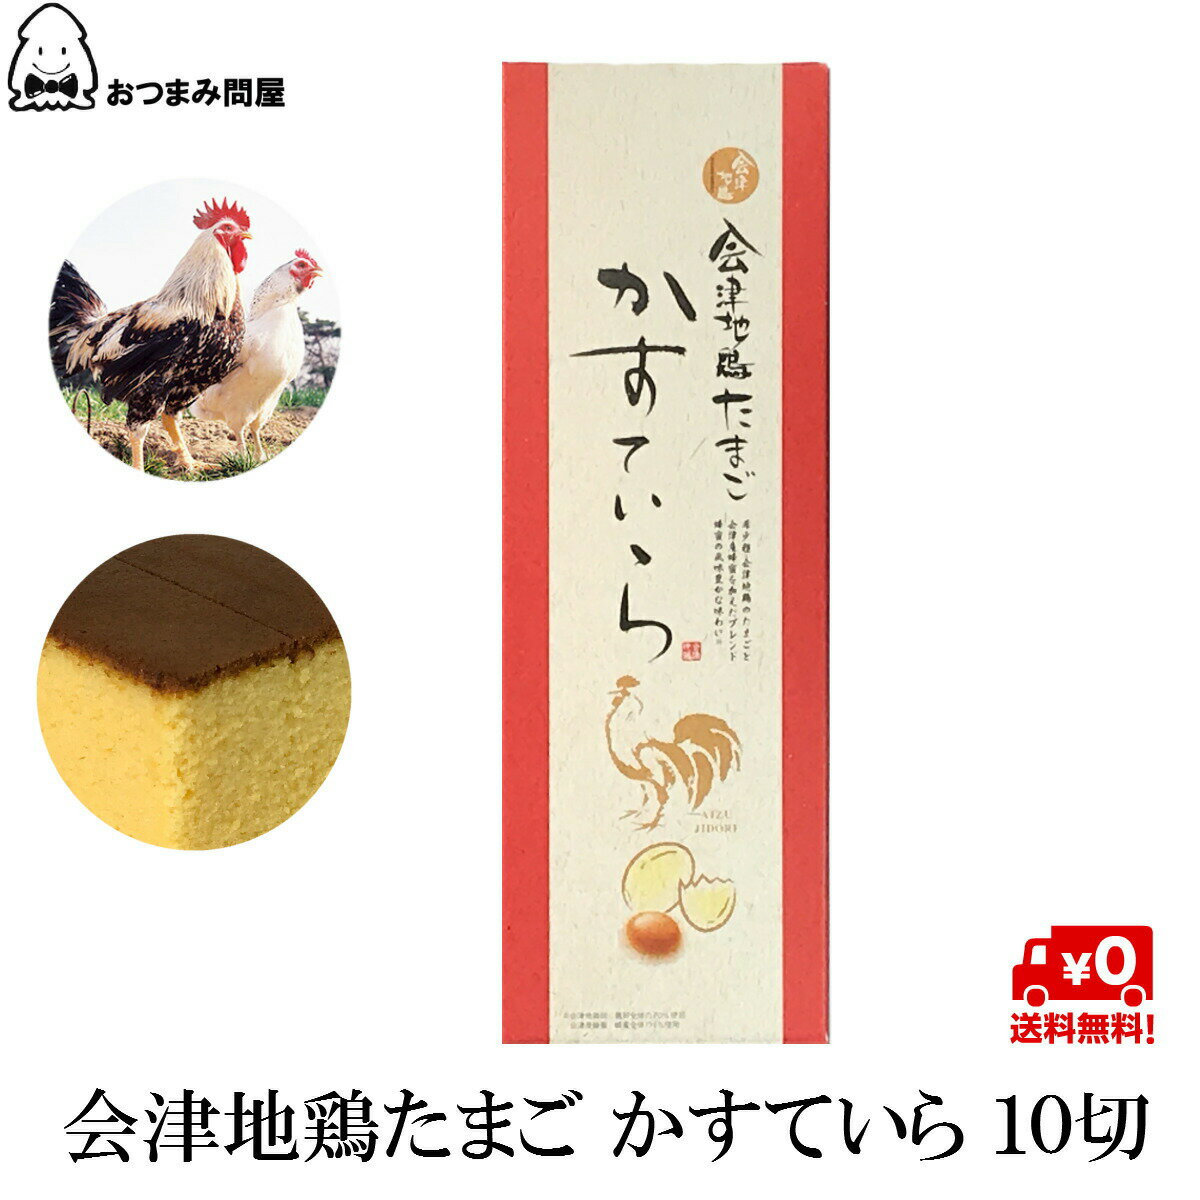 會津地雞網 會津地雞 蜂蜜蛋糕10切 x 1盒 常溫保存 福島 旬食福来 日本必買 | 日本樂天熱銷